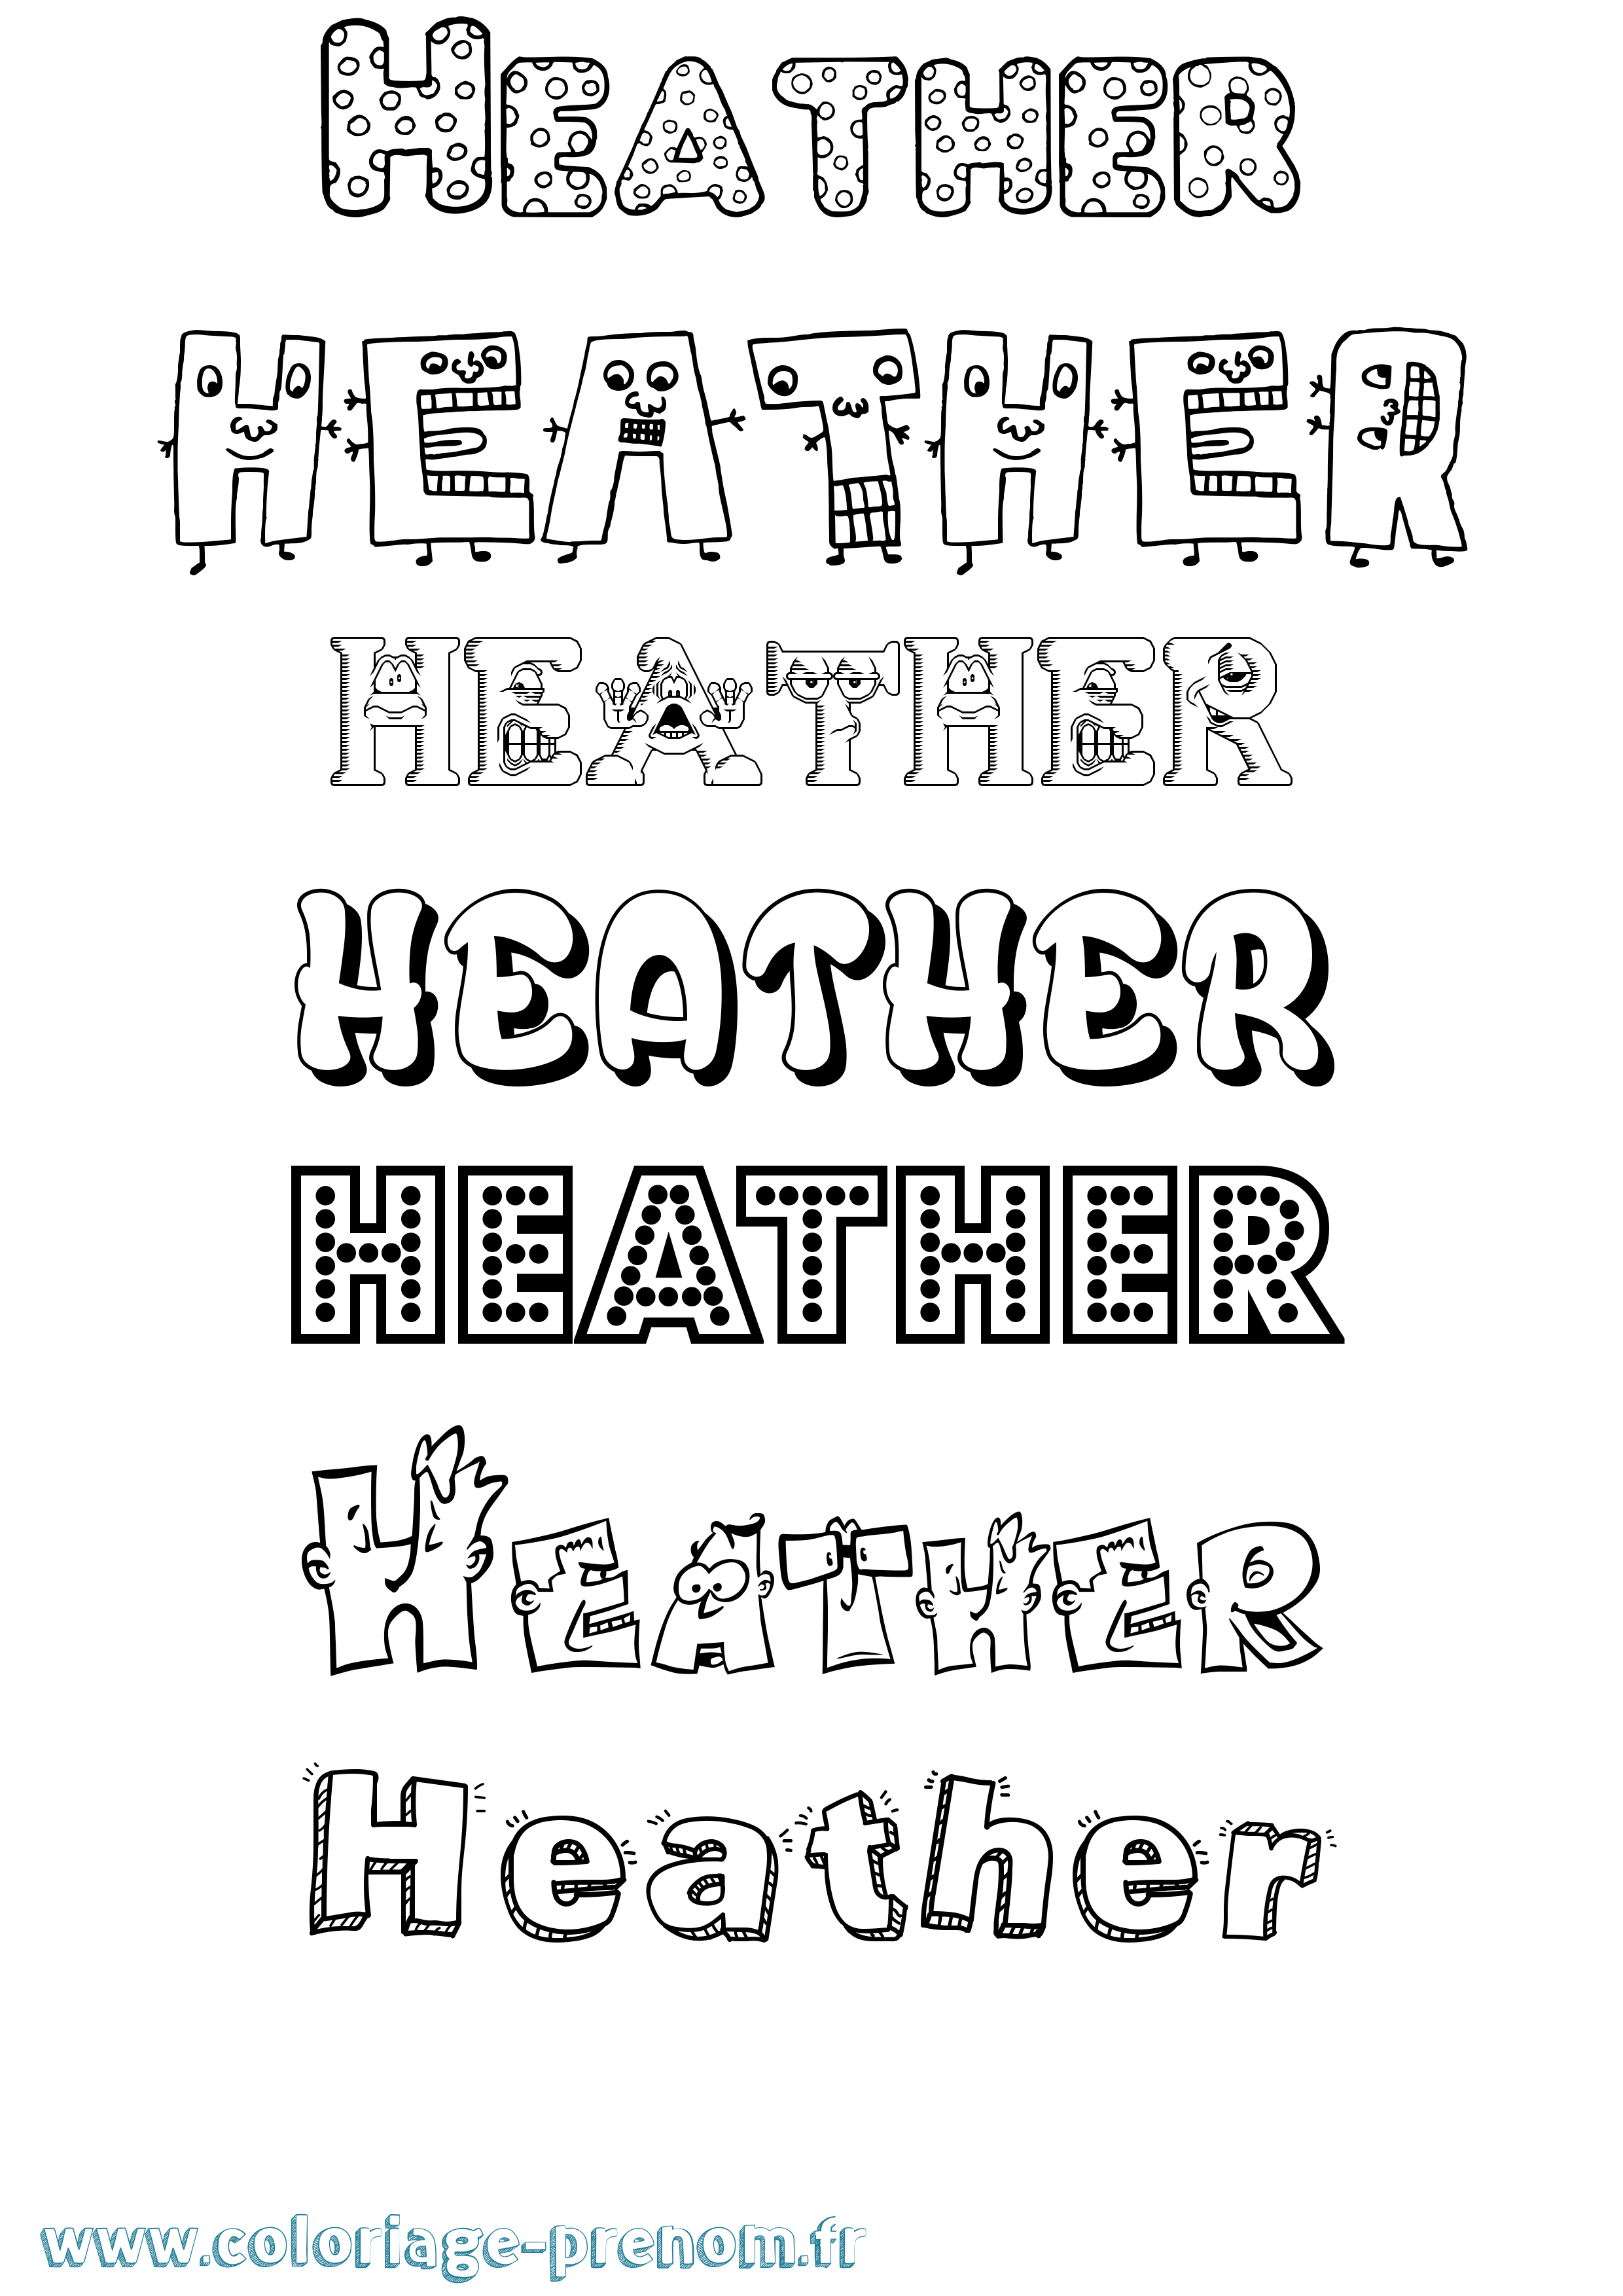 Coloriage prénom Heather Fun